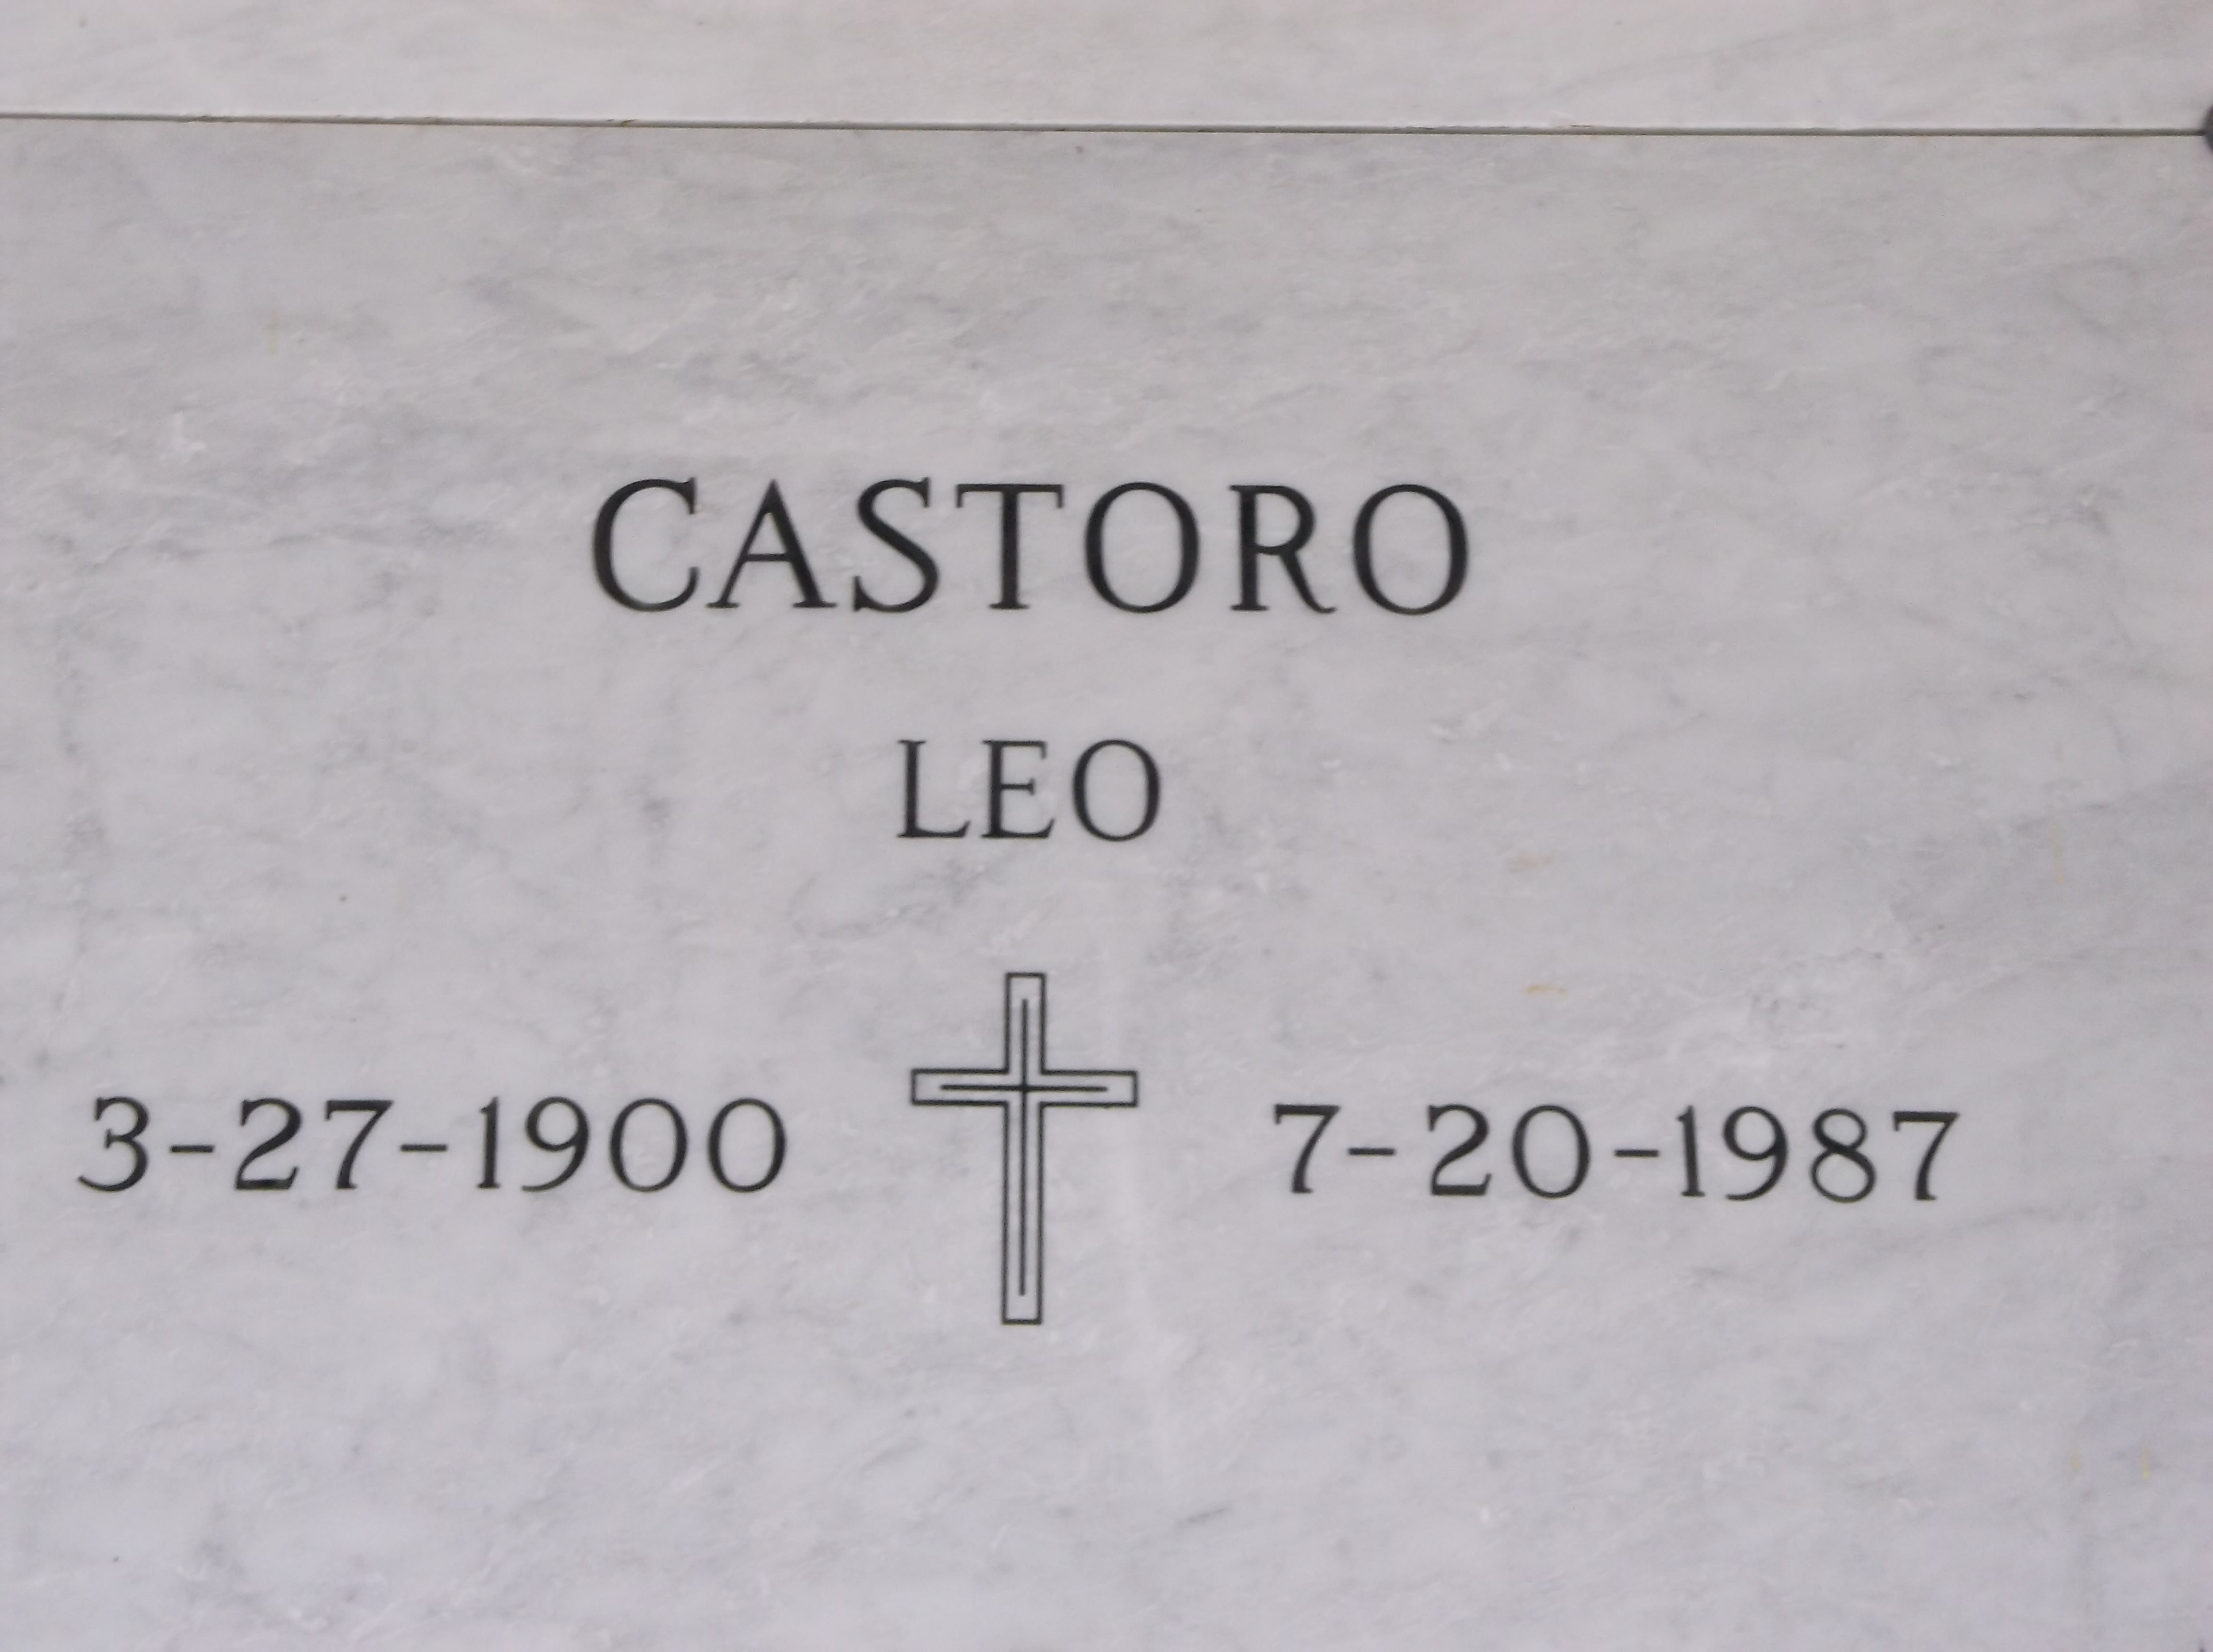 Leo Castoro